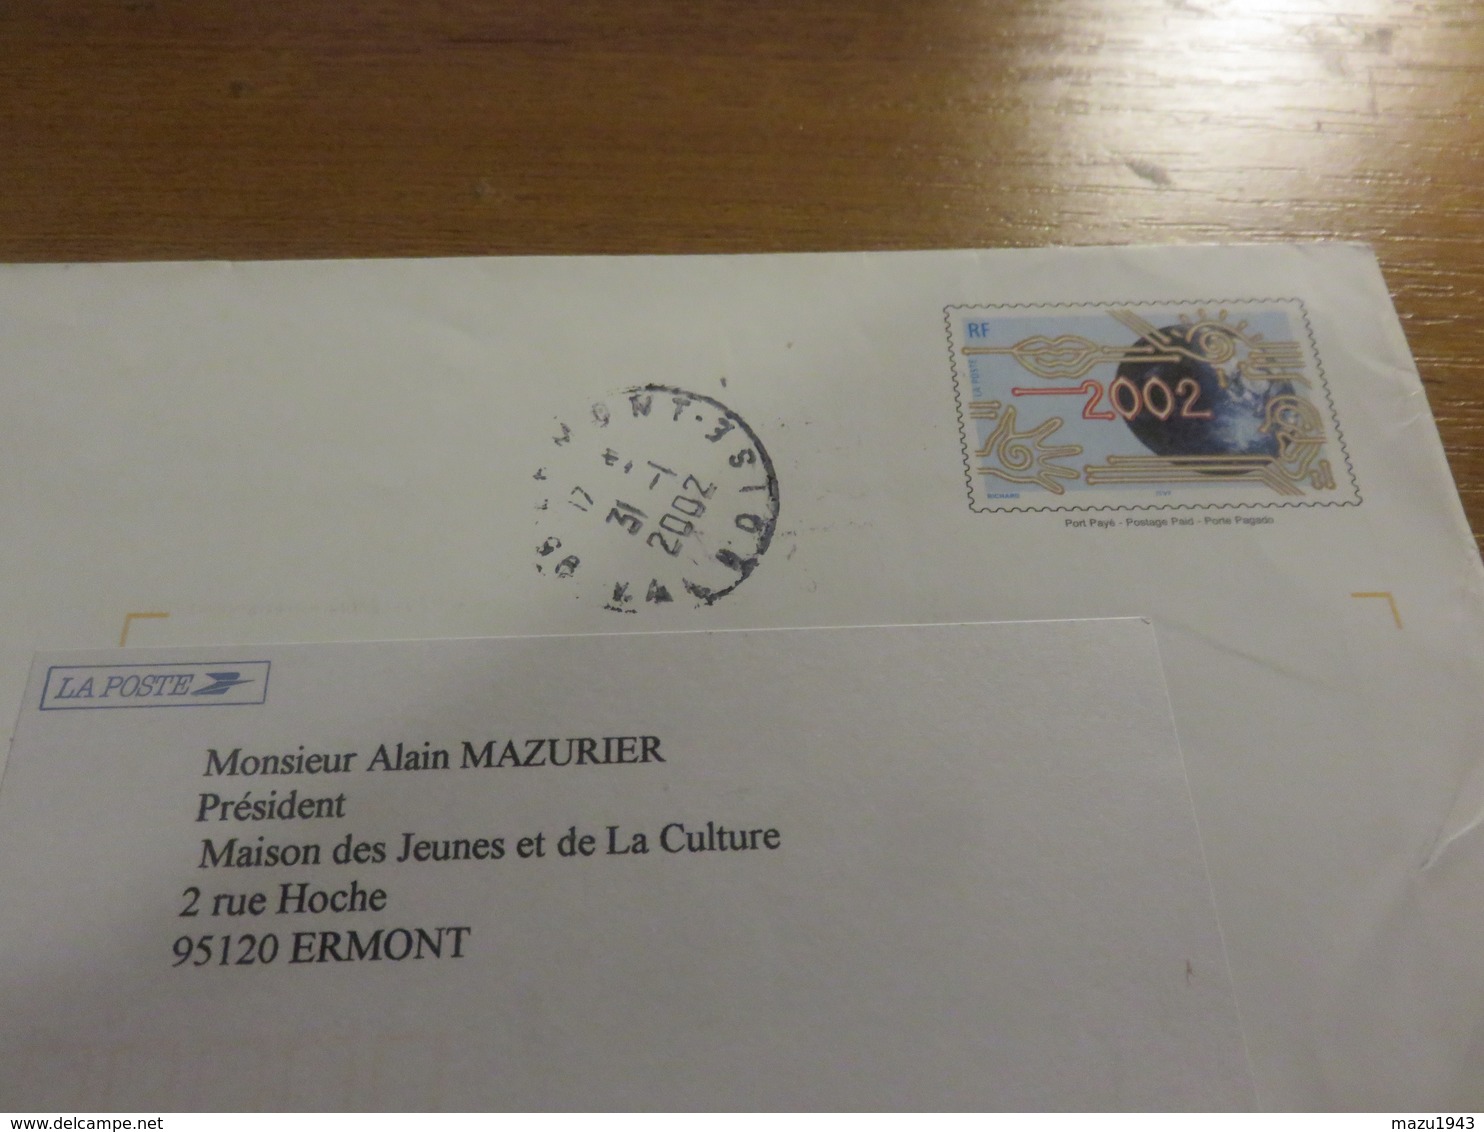 Enveloppe De La Poste 2002 - Bigewerkte Envelop  (voor 1995)